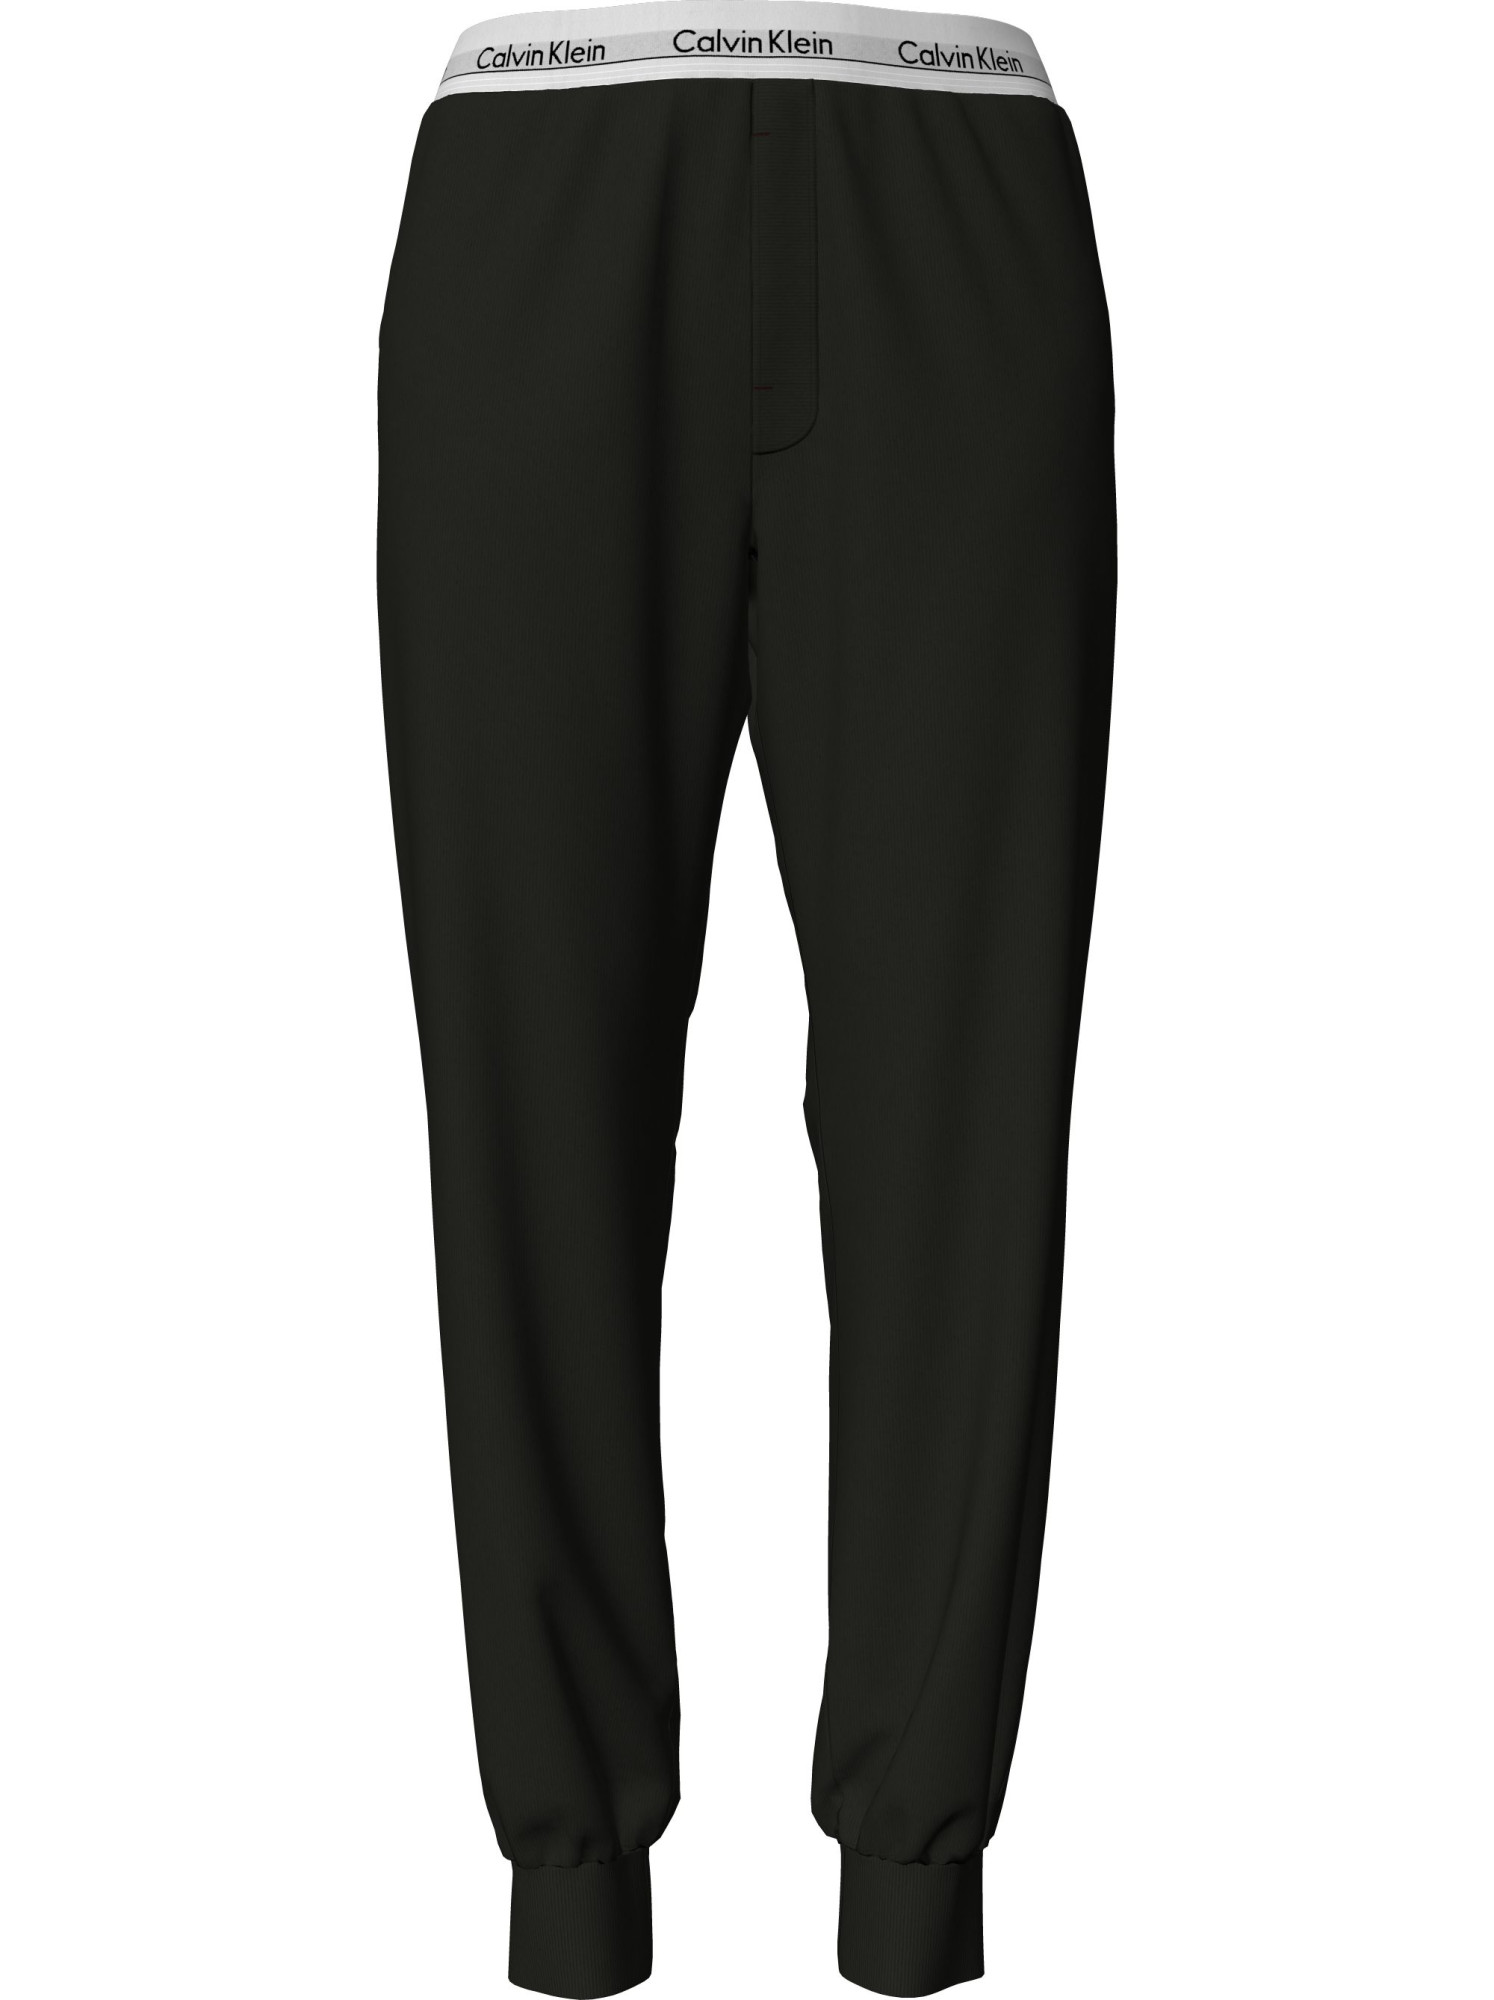 Dámské pyžamové kalhoty Pyjama Pants Modern Cotton 000QS6872EUB1 černá - Calvin Klein S